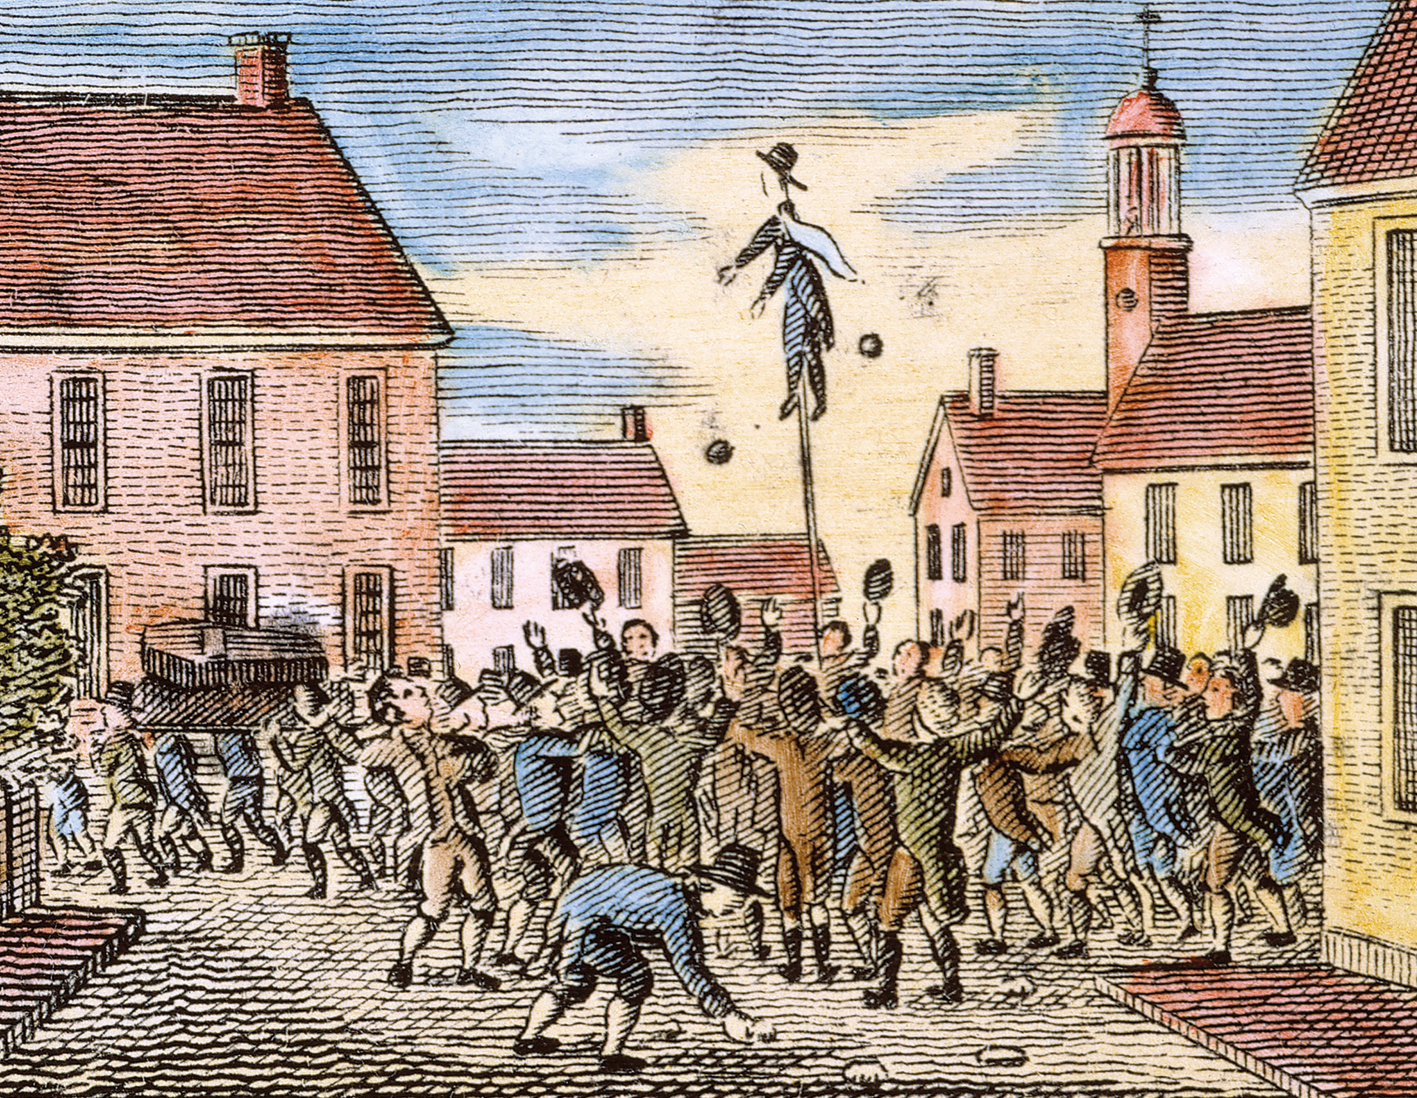 Gravura. Pessoas aglomeradas em uma rua. Os homens estão erguendo seus chapéus. Ao centro, um boneco é exibido no alto de um mastro. Objetos são lançados na sua direção. Ao redor, muitas casas.